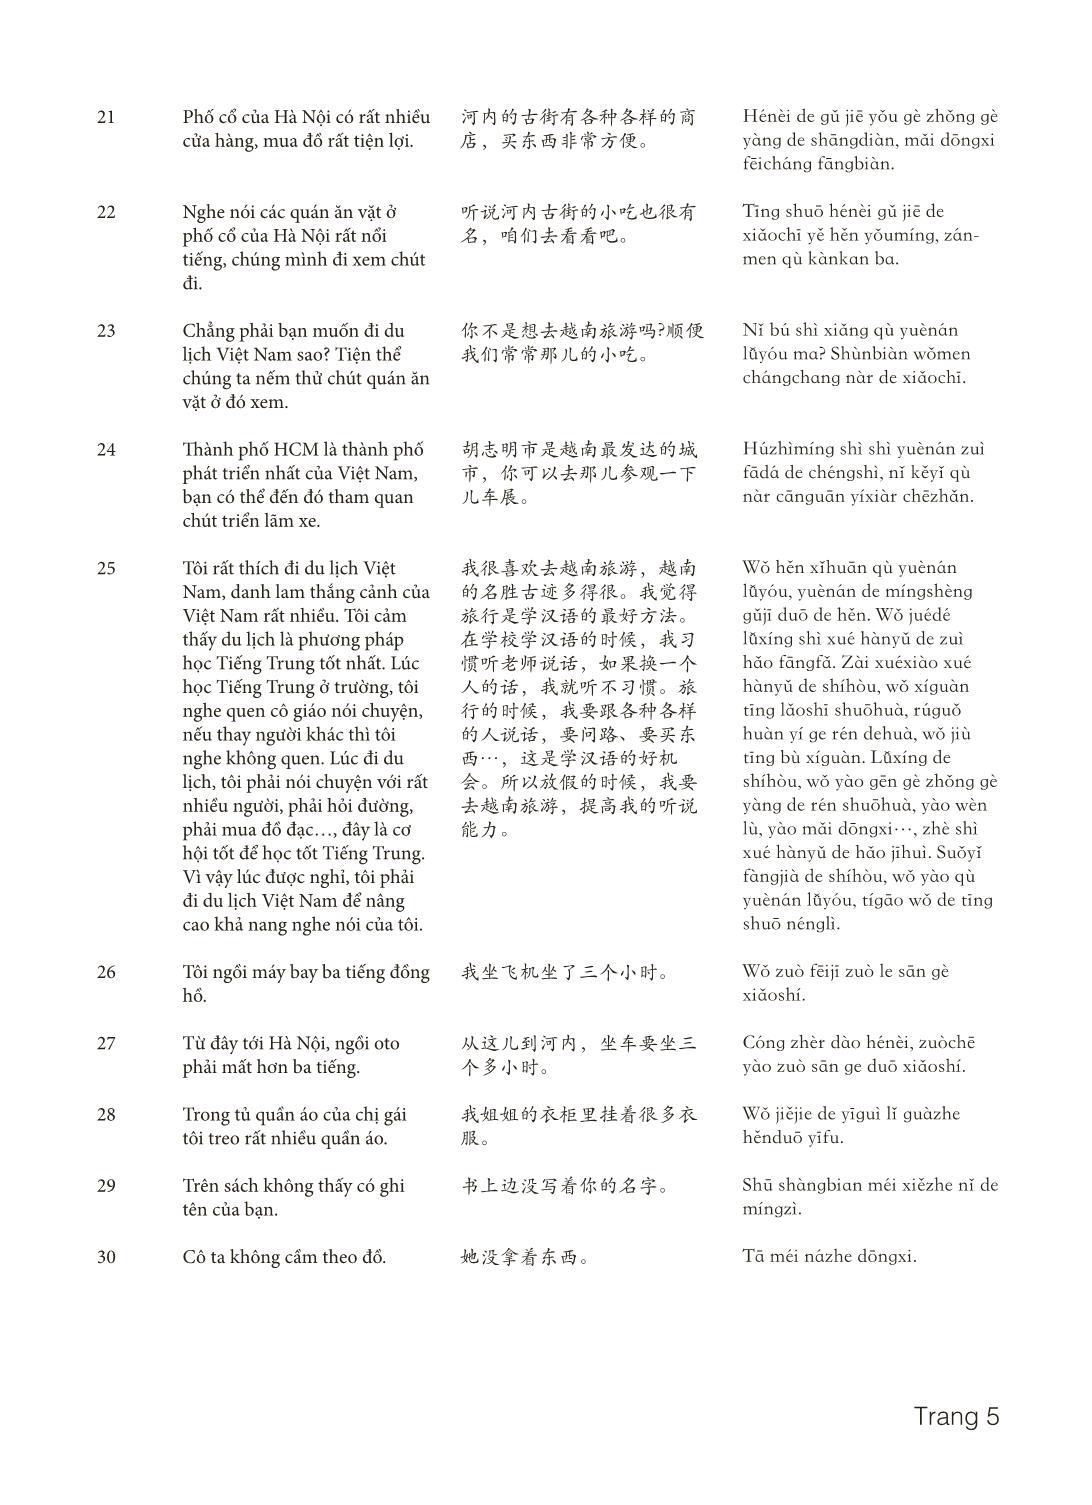 3000 Câu đàm thoại tiếng Hoa - Phần 15 trang 5